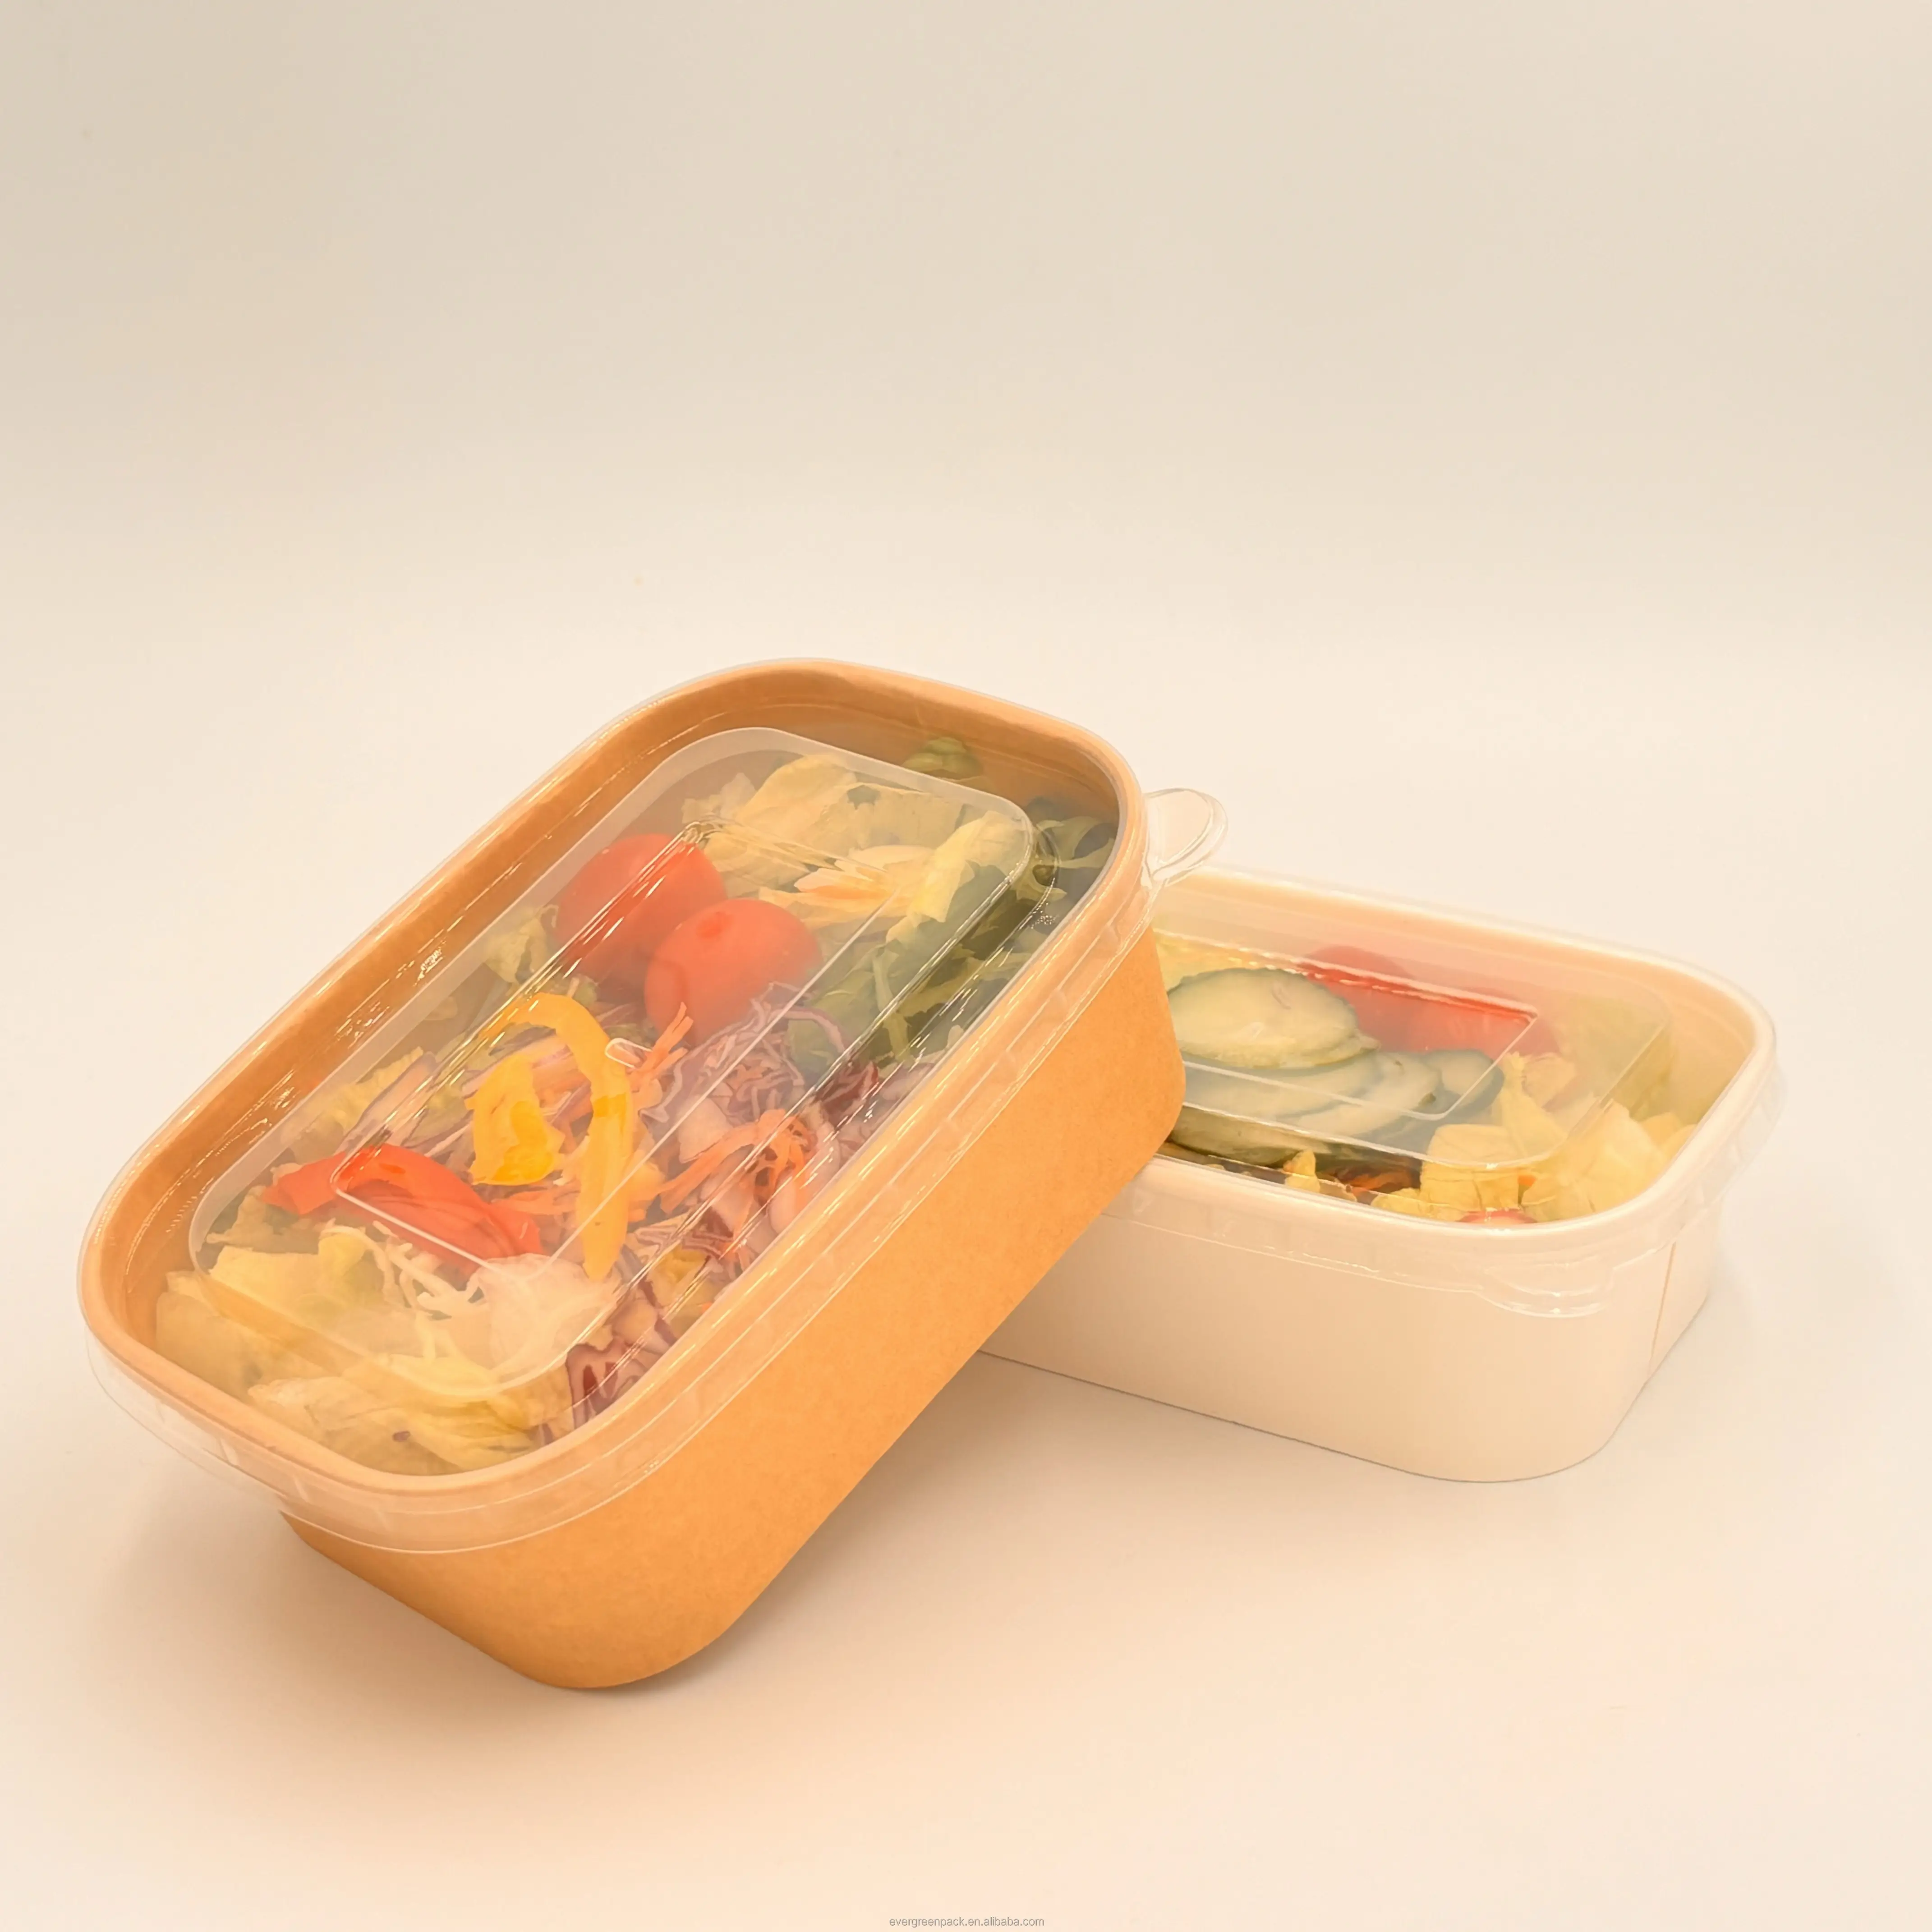 Contenitore per pranzo monouso per imballaggio alimentare porta via contenitore per alimenti in carta Kraft da asporto tagliatelle per insalata scatola di carta per pranzo